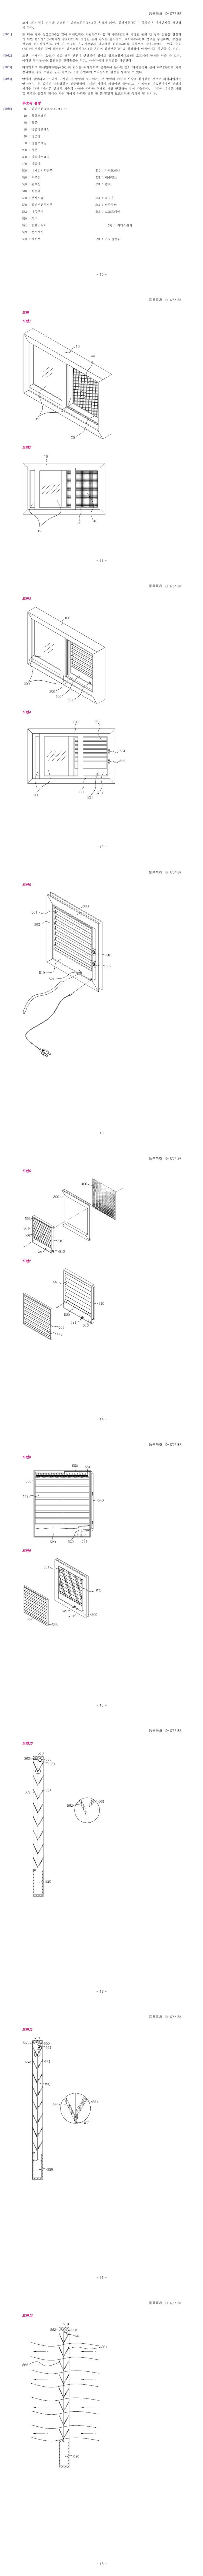 특허 제10-1757187호(미세먼지 차단기능이 구비된 창문장치, 성락출)